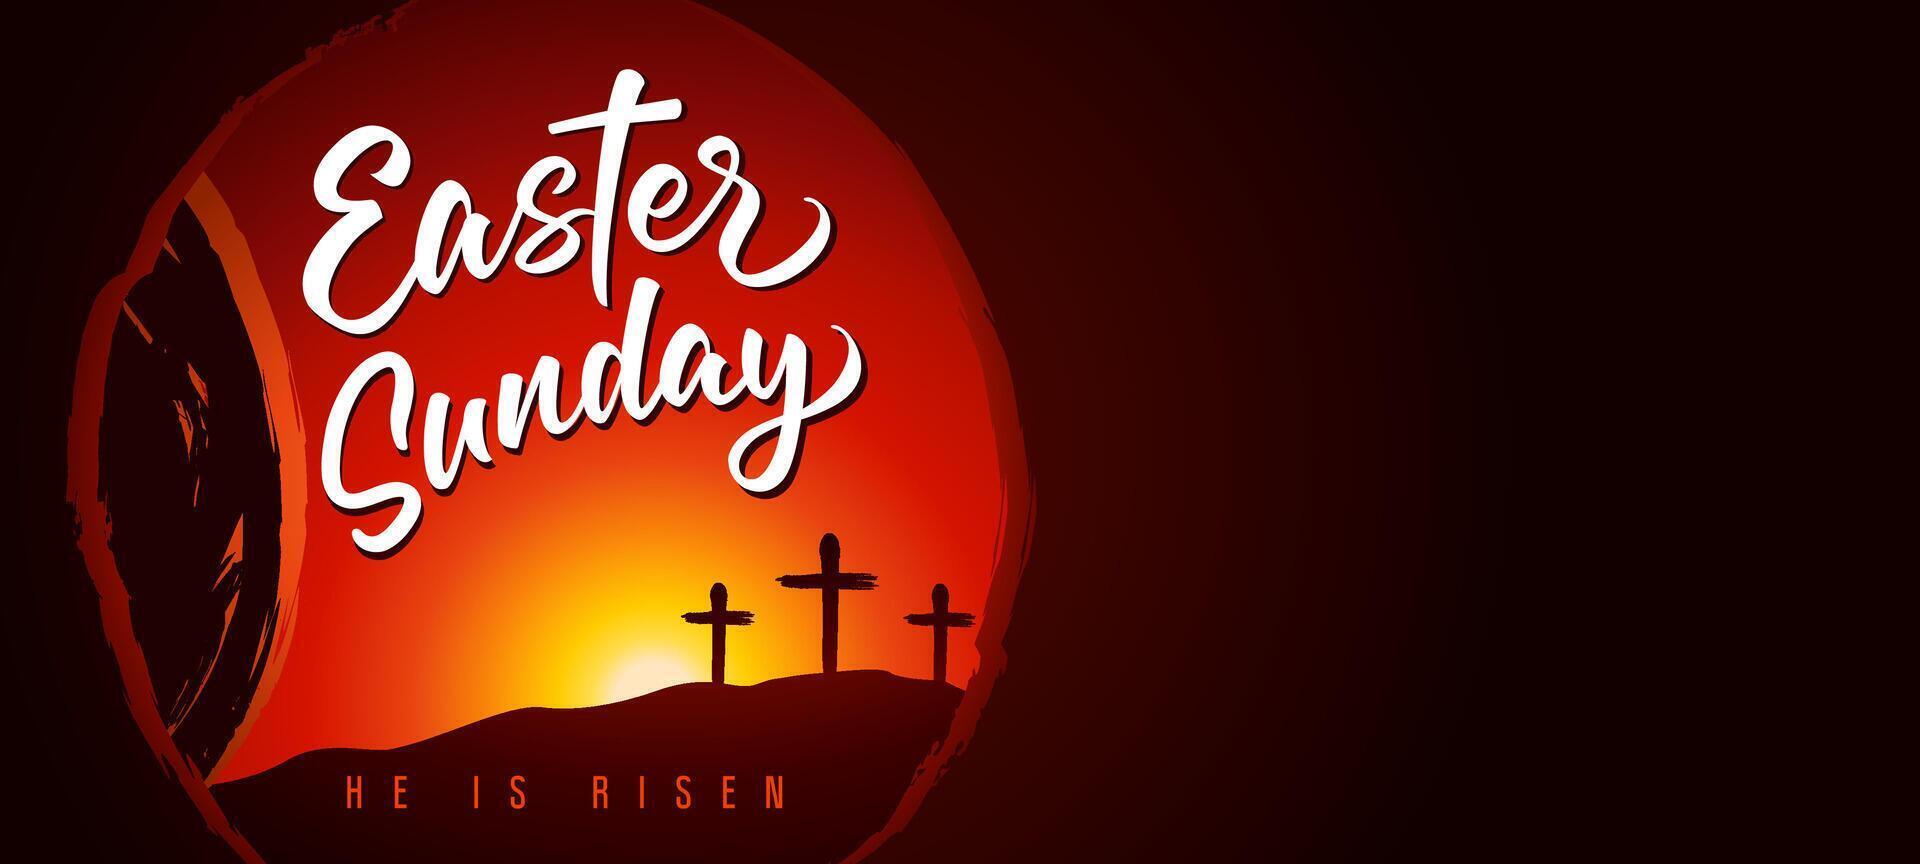 Pascua de Resurrección domingo invitación modelo. vector imagen con vacío blanco. tarjeta postal muestra diseño